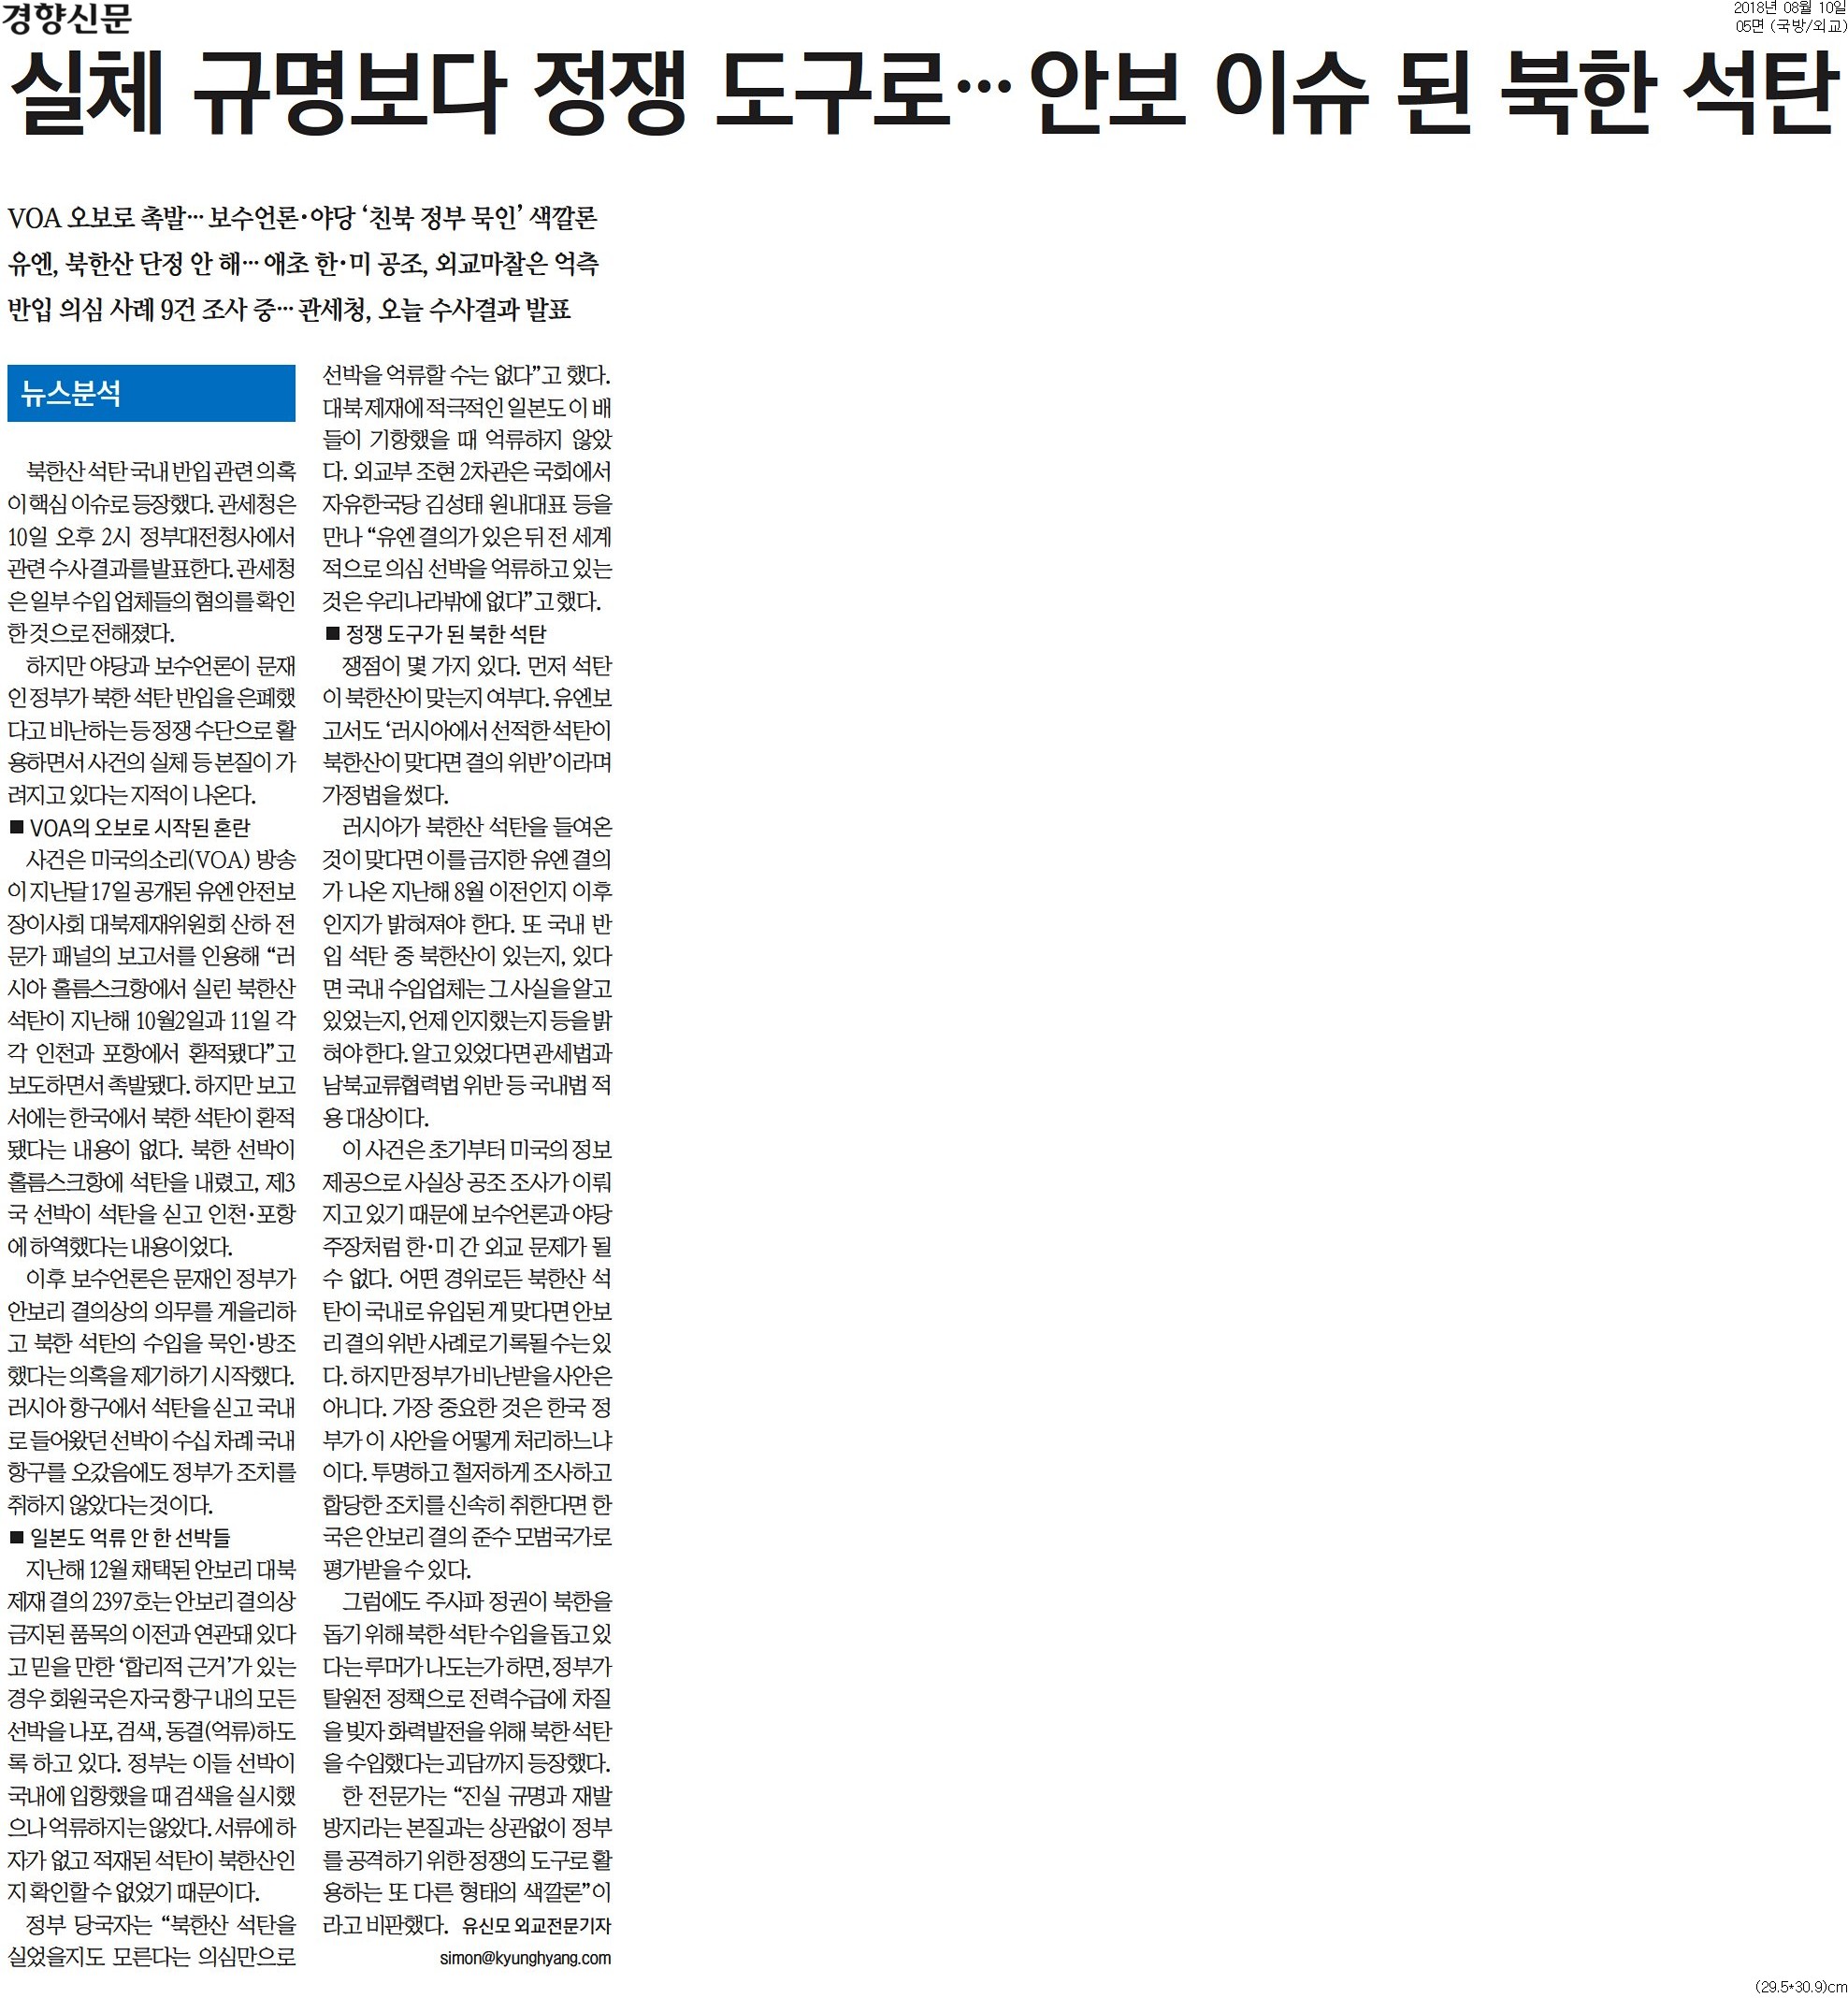 ▲ 8월10일 경향신문 5면 기사.